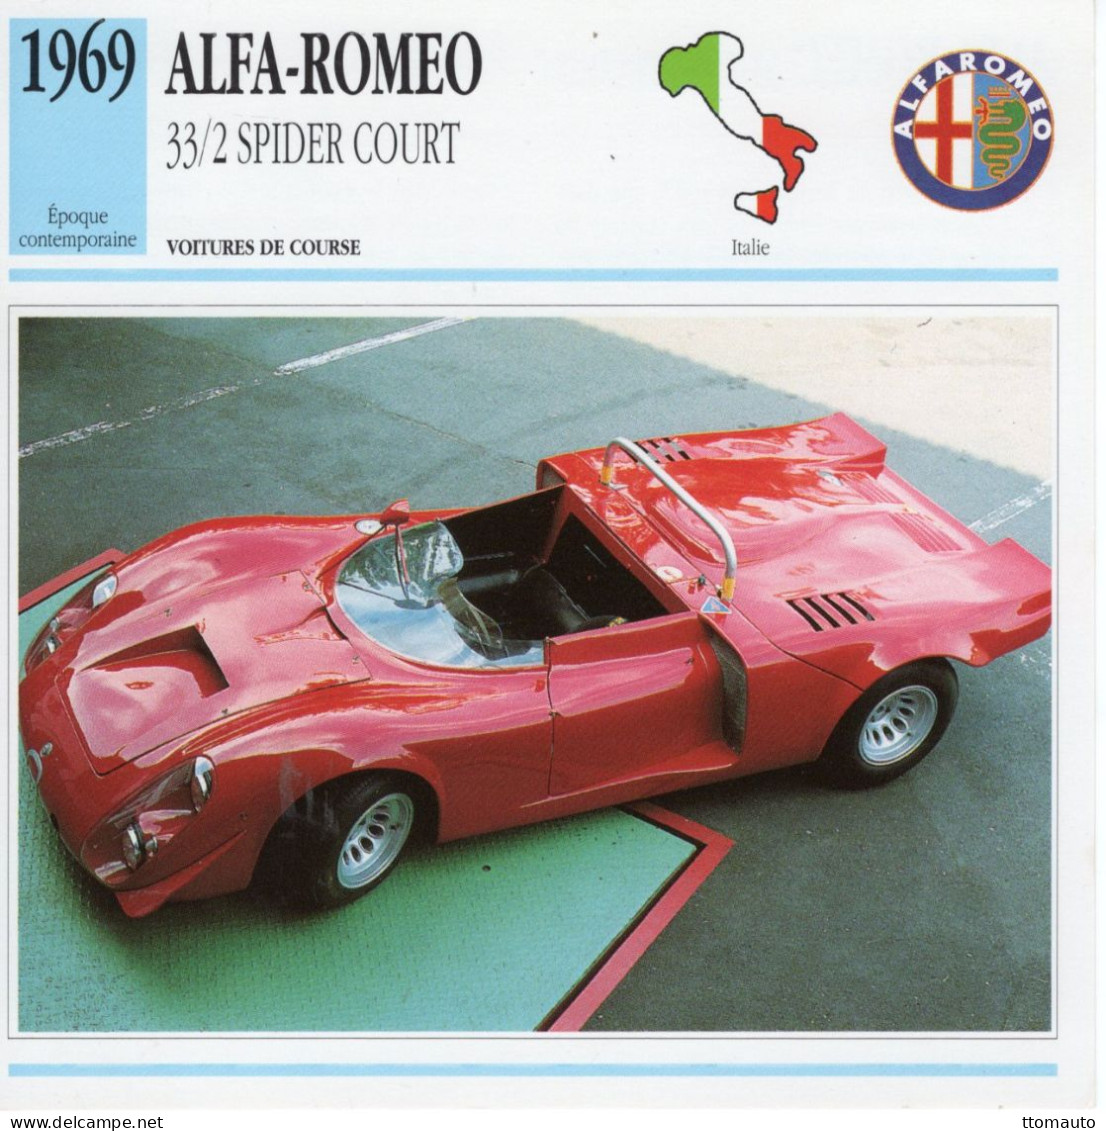 Fiche  -  Voiture De Course -  Alfa Romeo 33/2 Spider Court (1969)   -  Carte De Collection - Cars